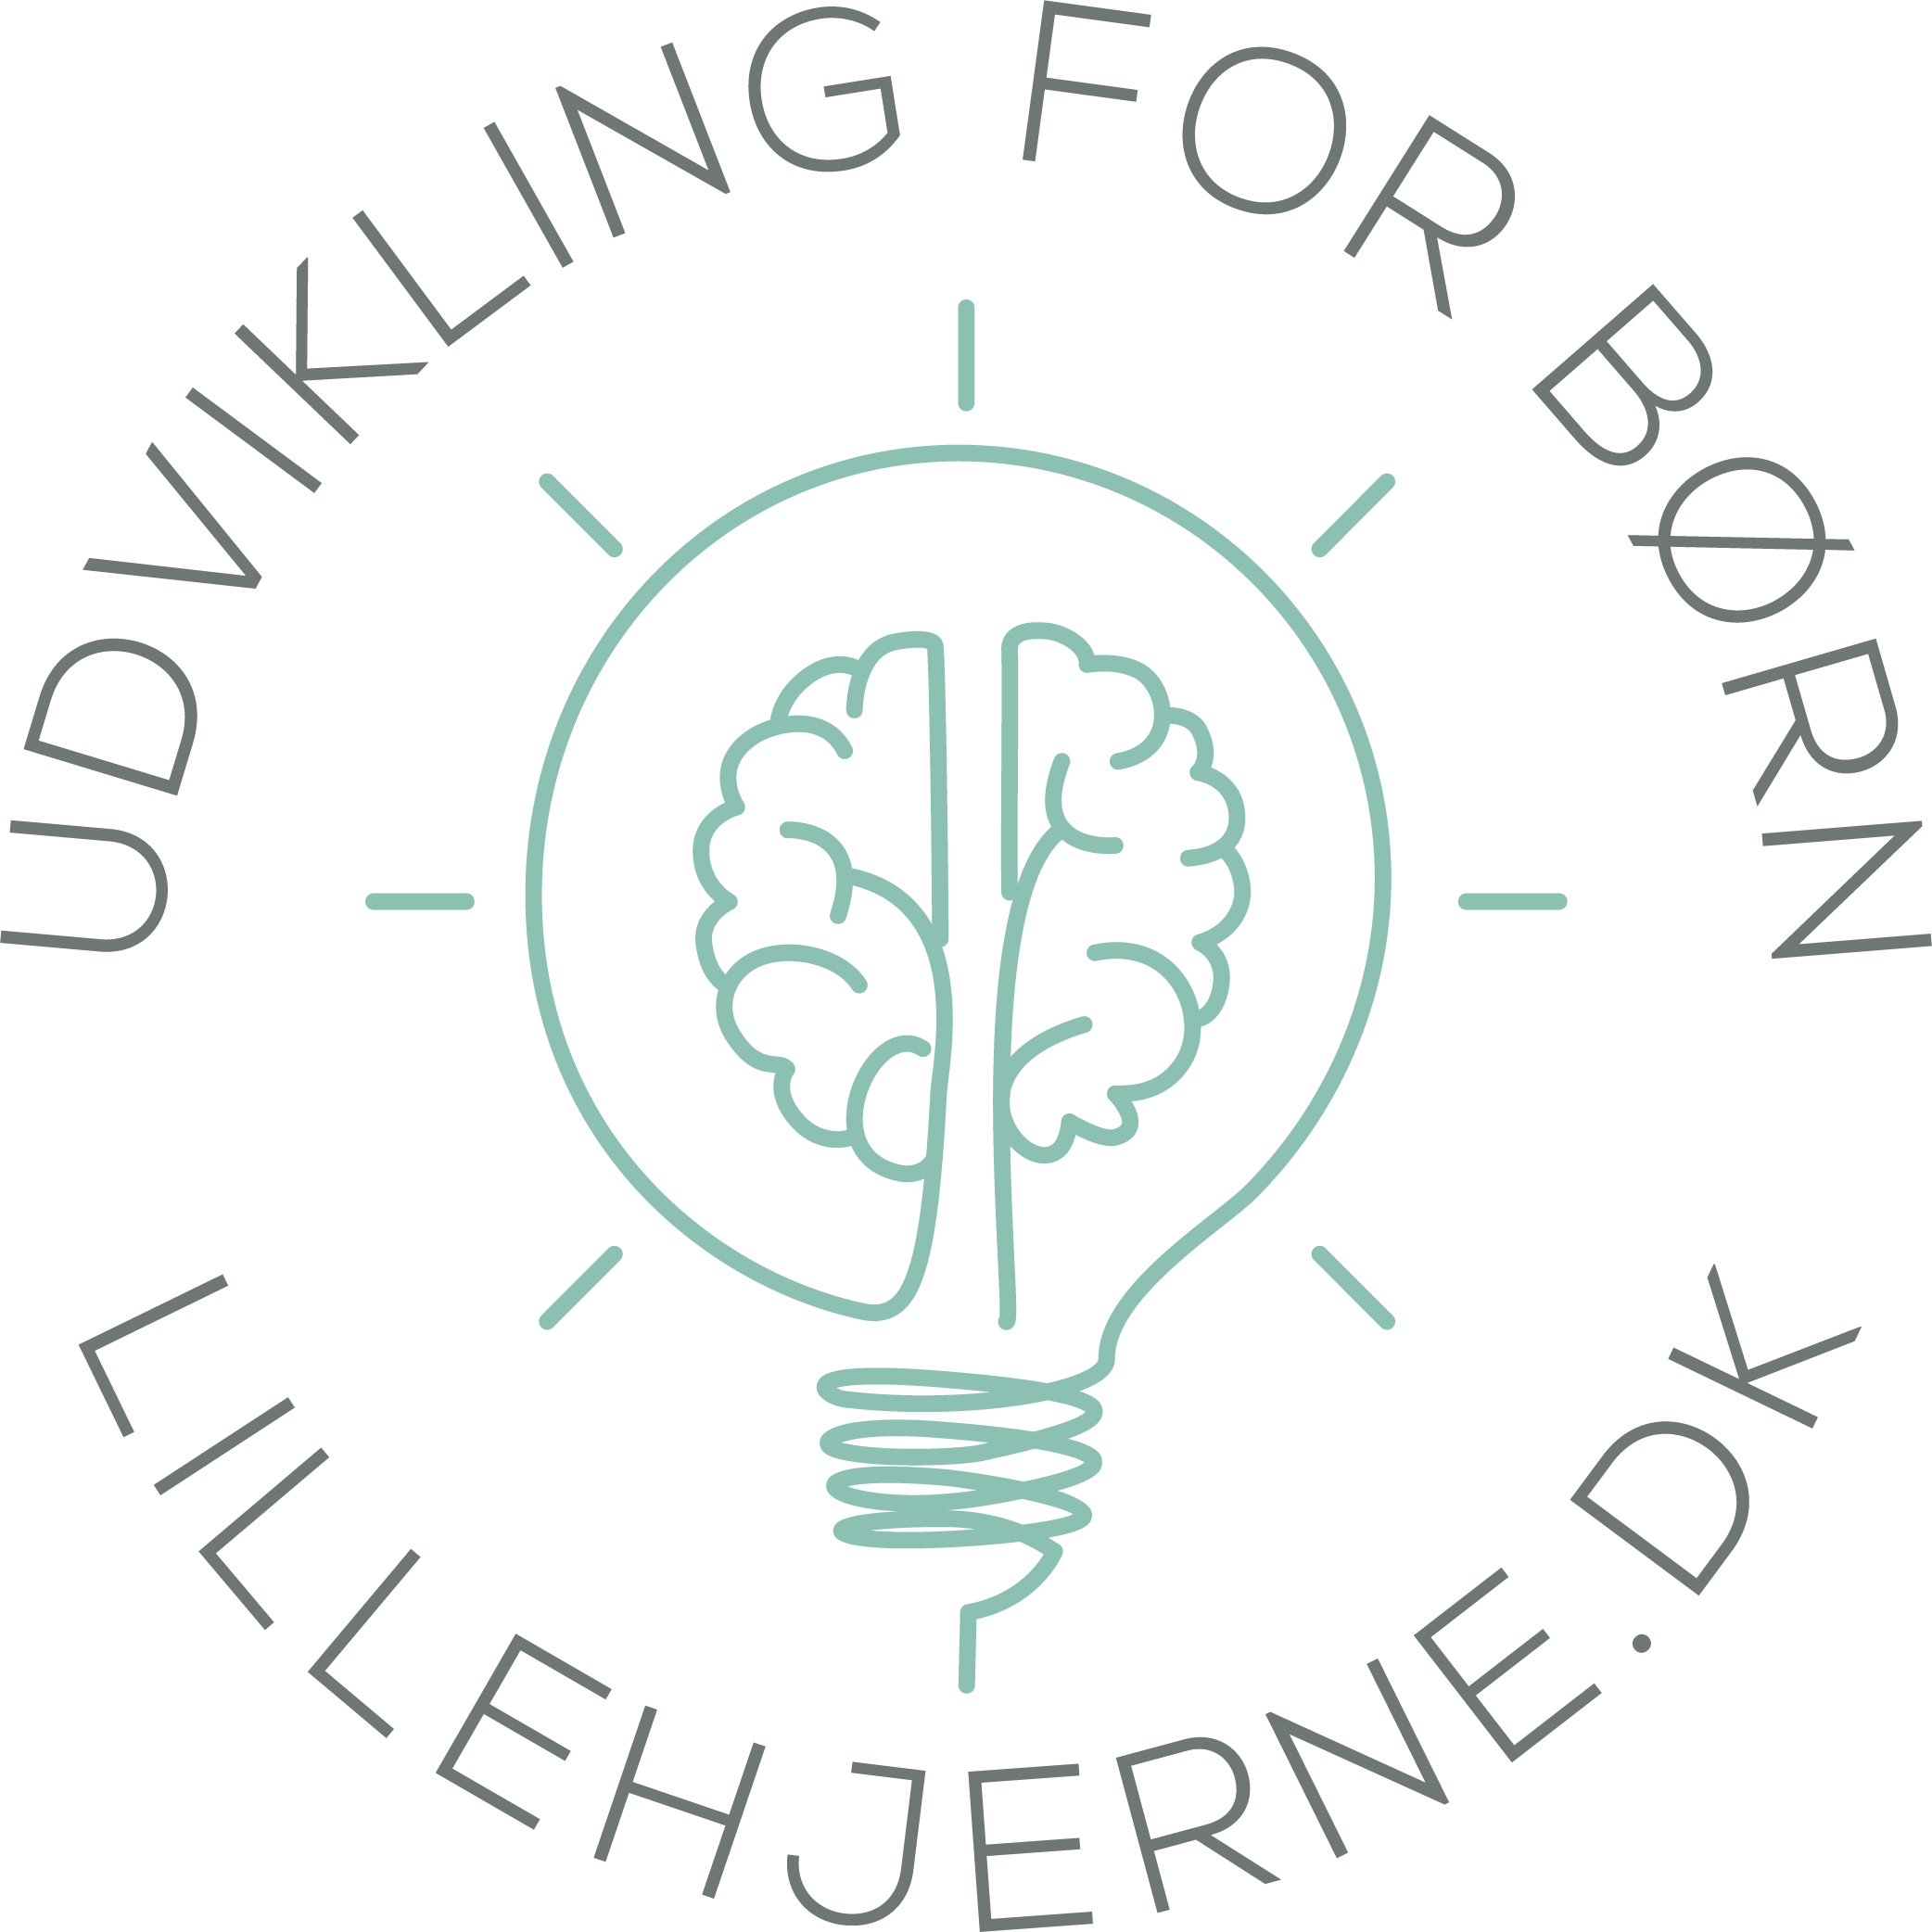 Lillehjerne.dk - Udvikling for børn